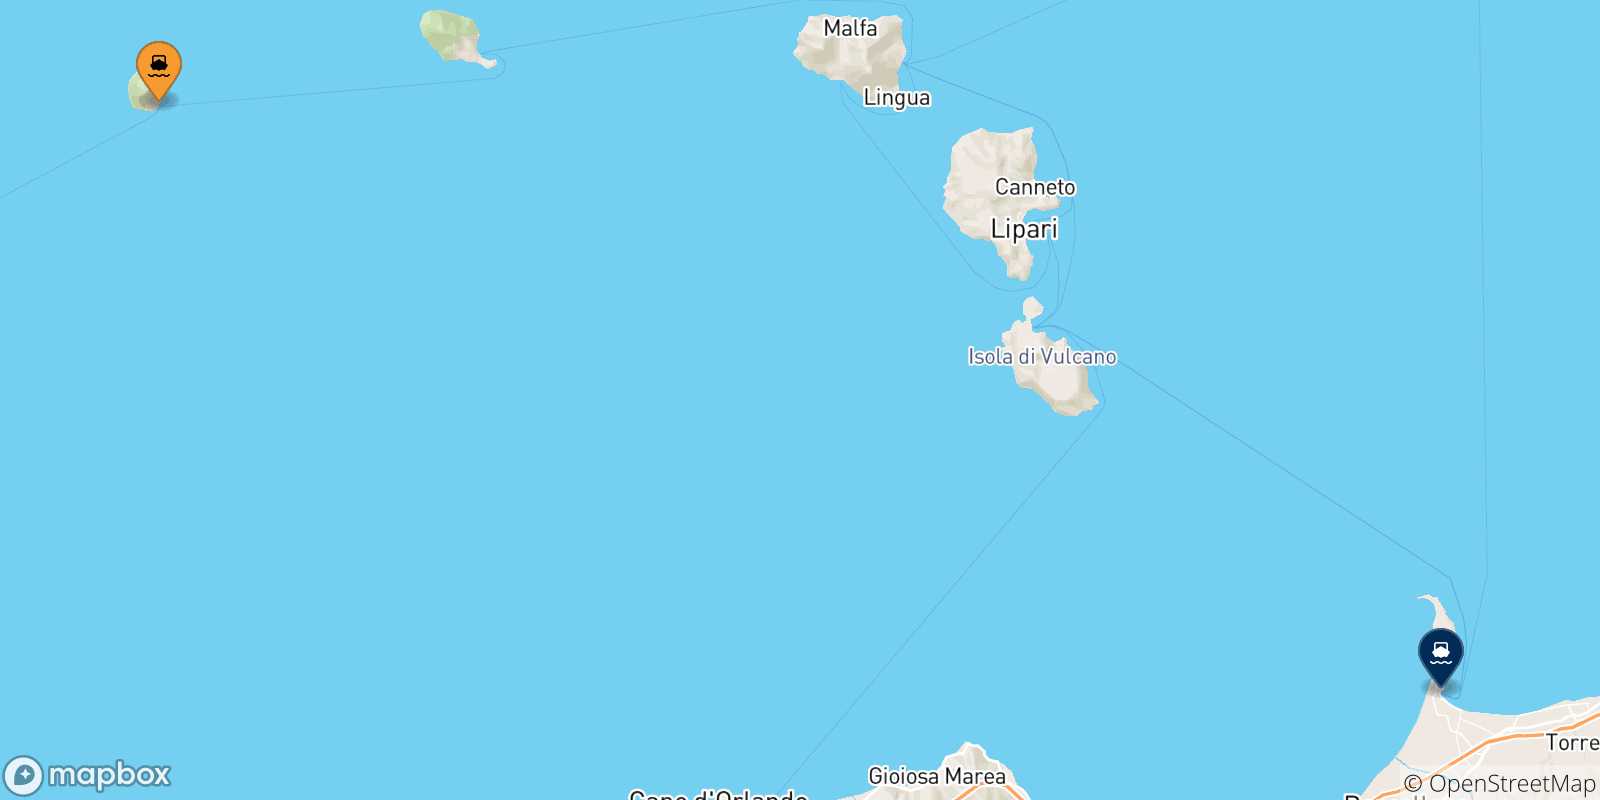 Mappa delle possibili rotte tra Alicudi e la Sicilia